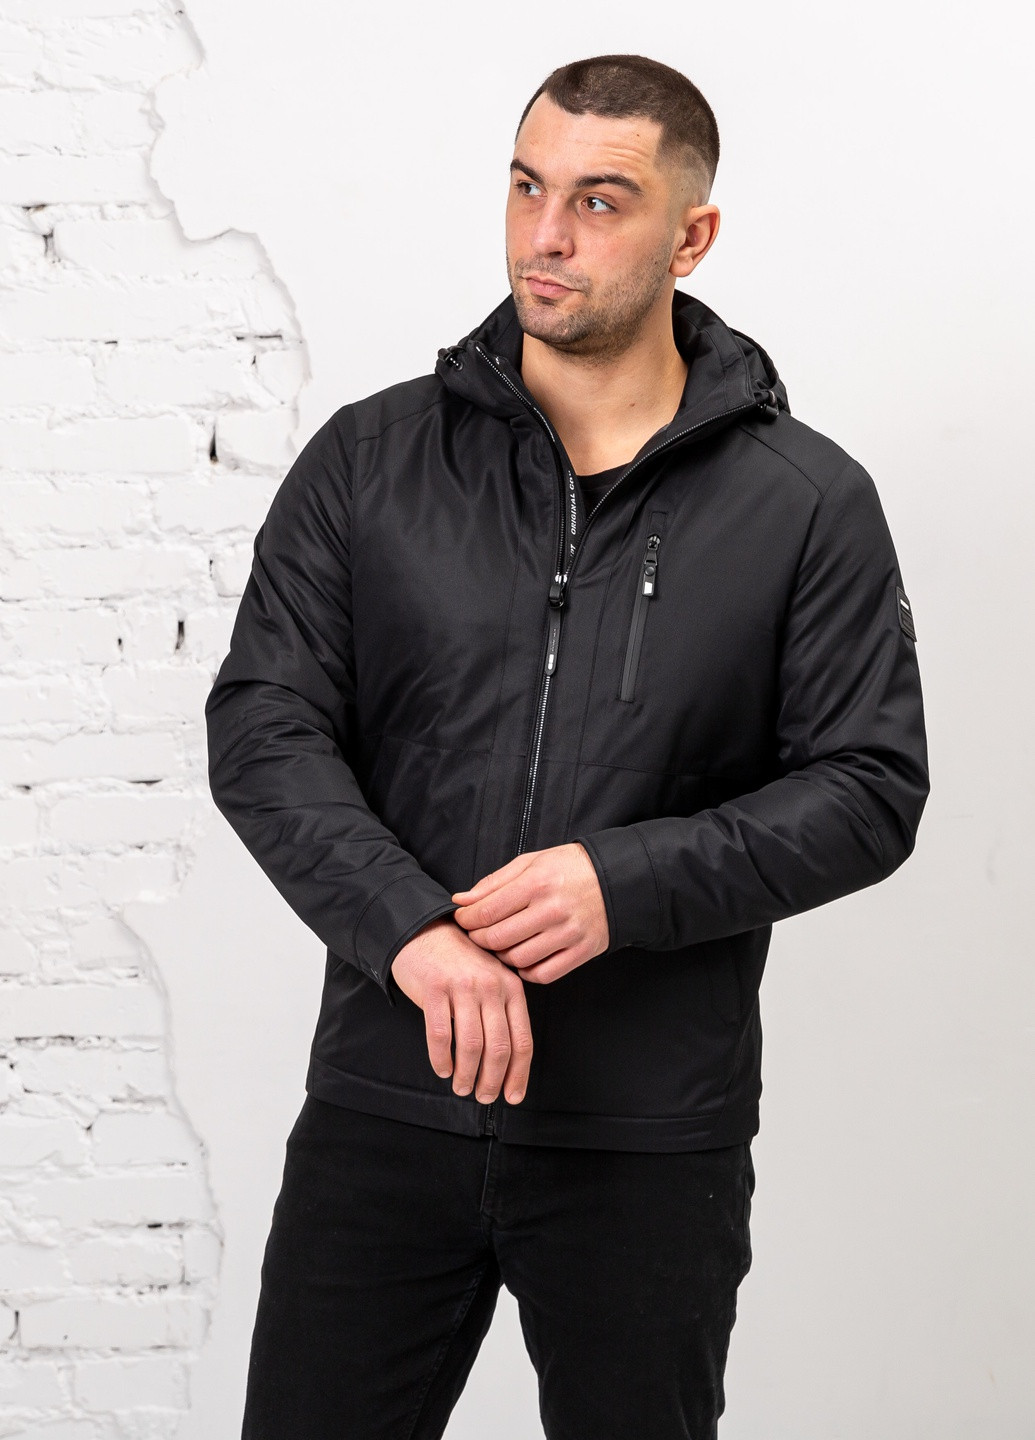 Чорна демісезонна демісезонна куртка чоловіча великого розміру бренд vavalon SK